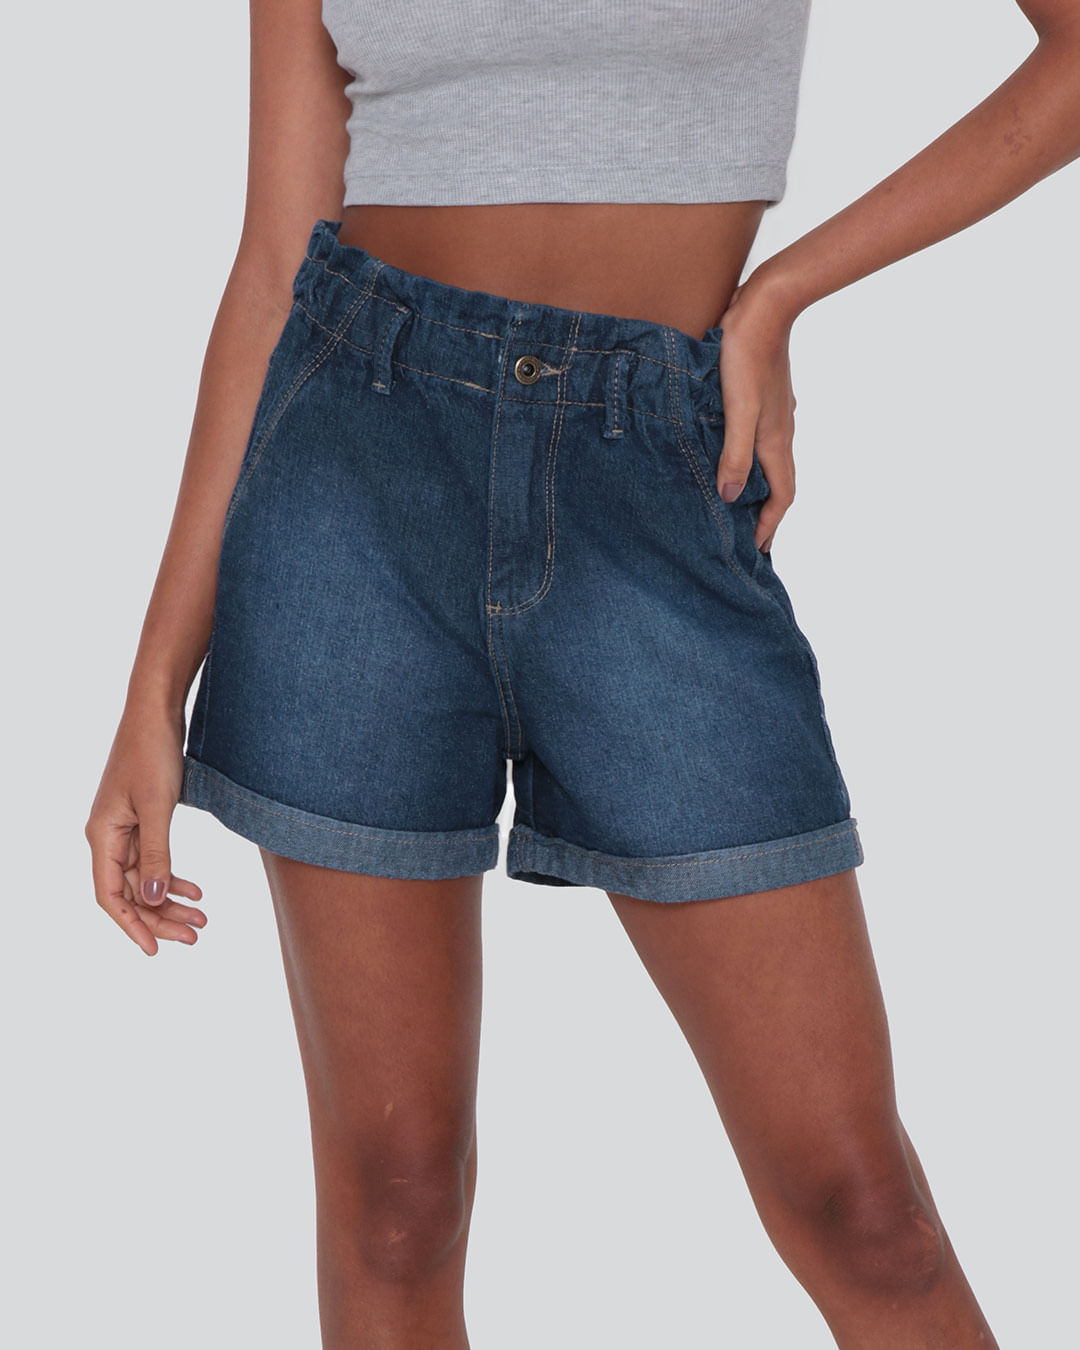 Short-Jeans-Feminino-Clochard-Azul-Medio